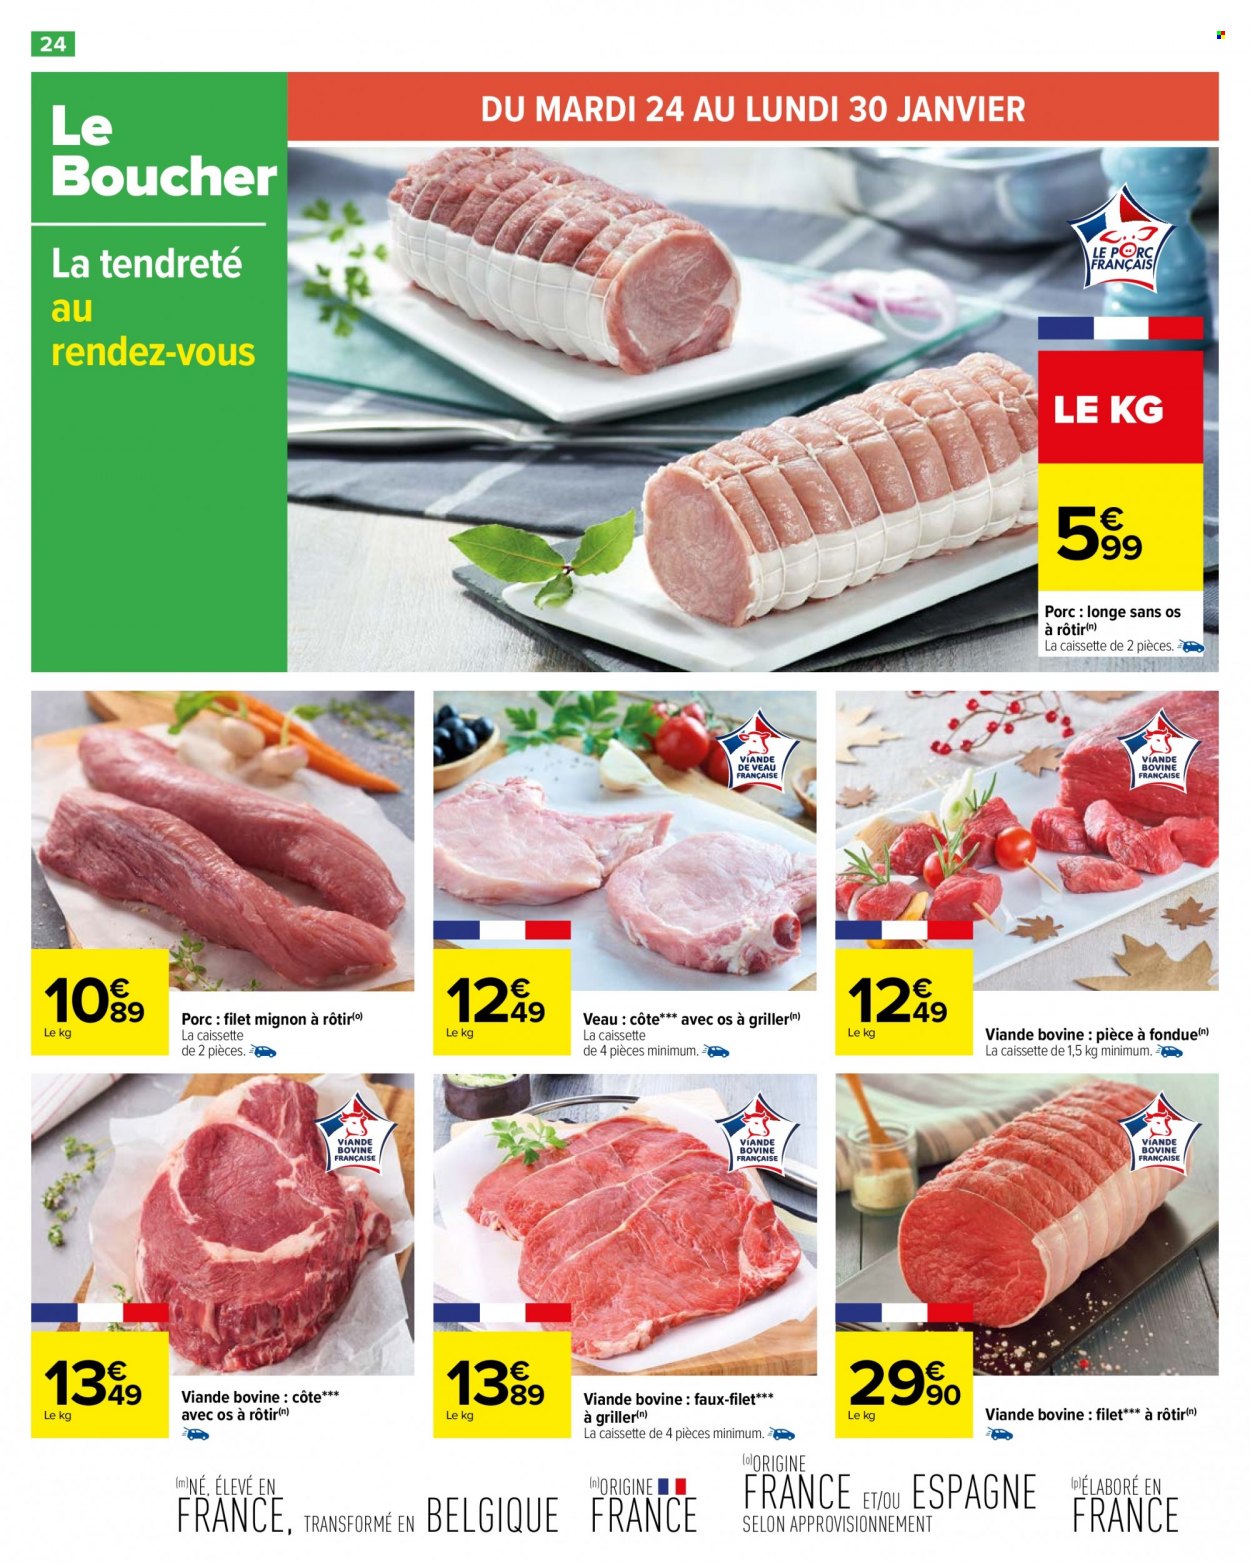 Catalogue Carrefour Hypermarchés - 24.01.2023 - 06.02.2023. 